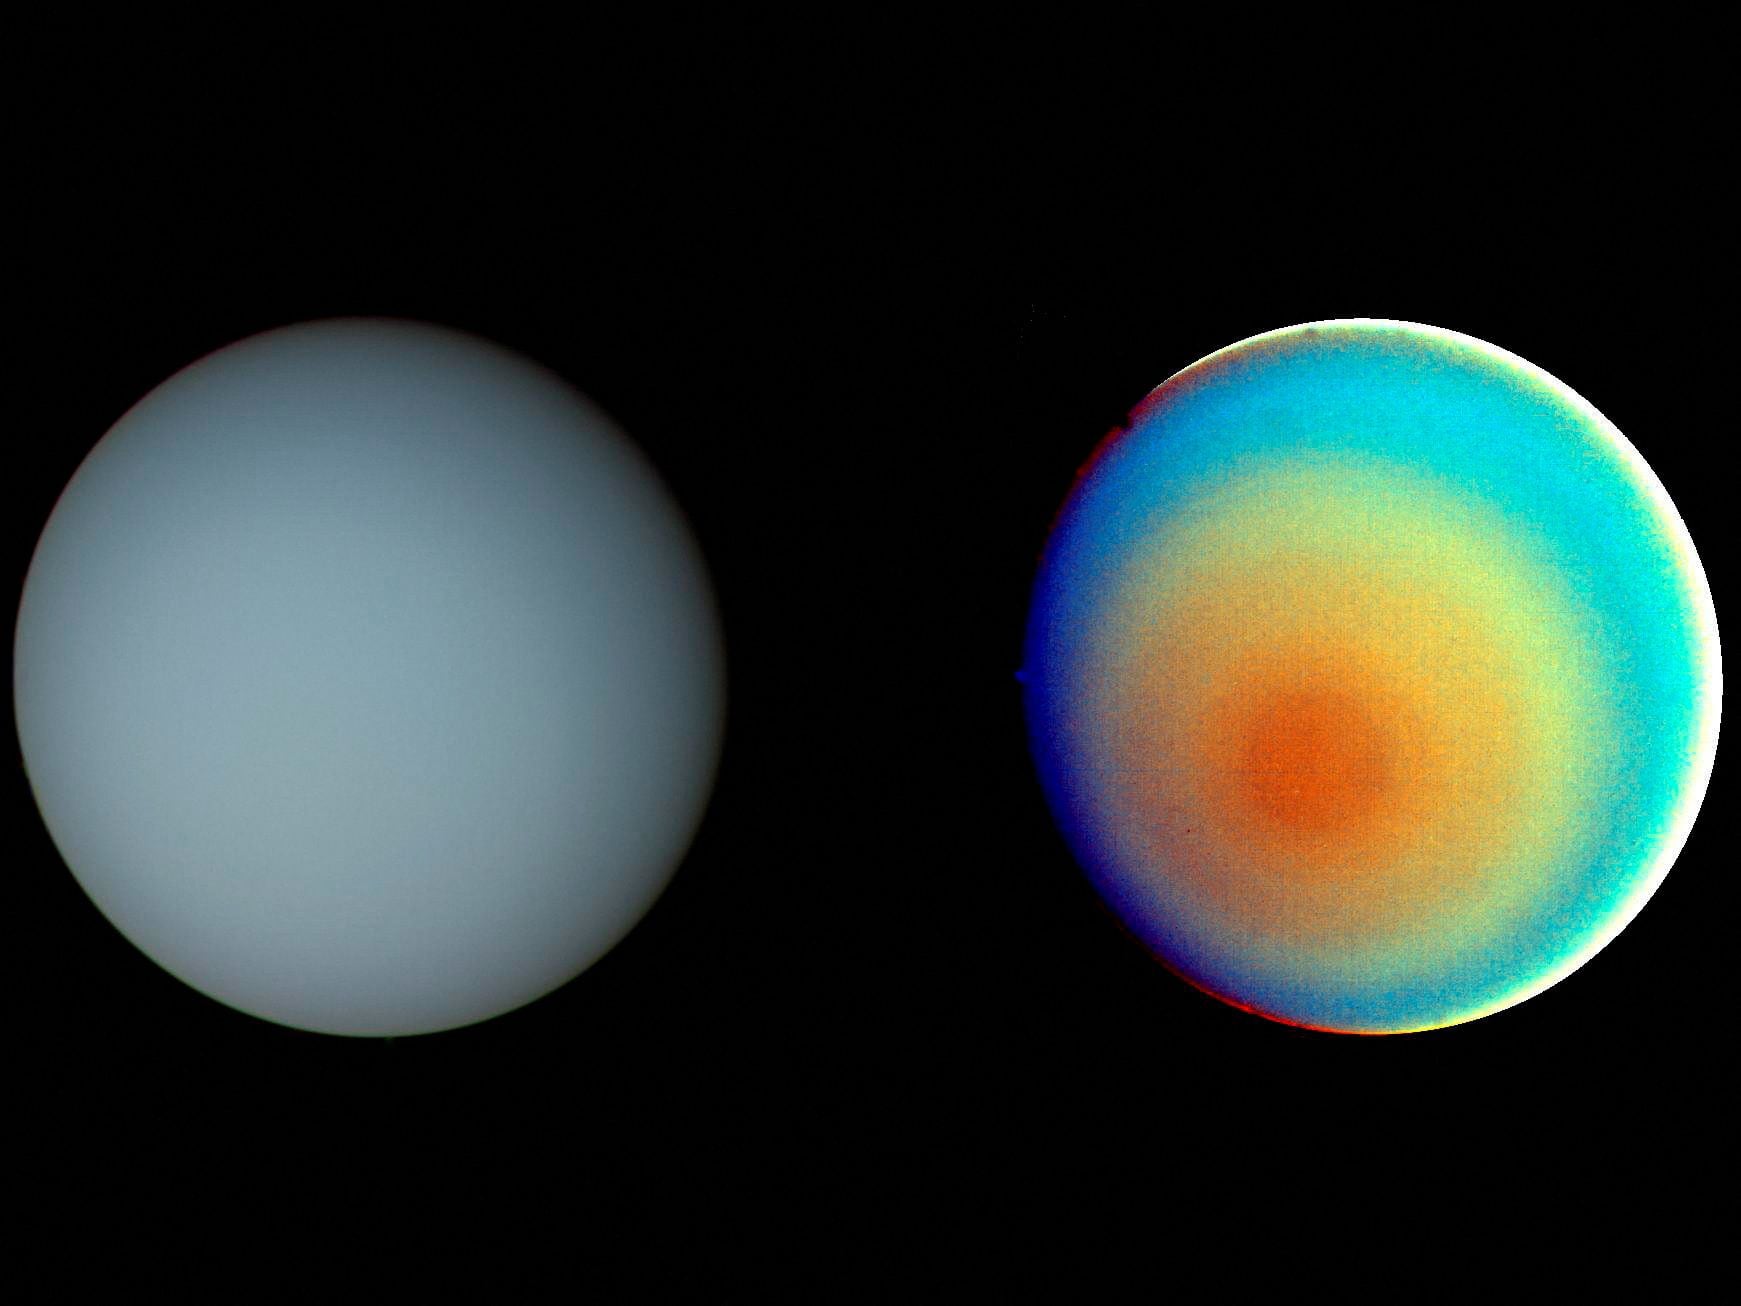 Dos fotografías de Urano tomadas por la Voyager 2 el 17 de enero de 1986 (REUTERS/NASA/JPL/Handout via Reuters/File Photo)